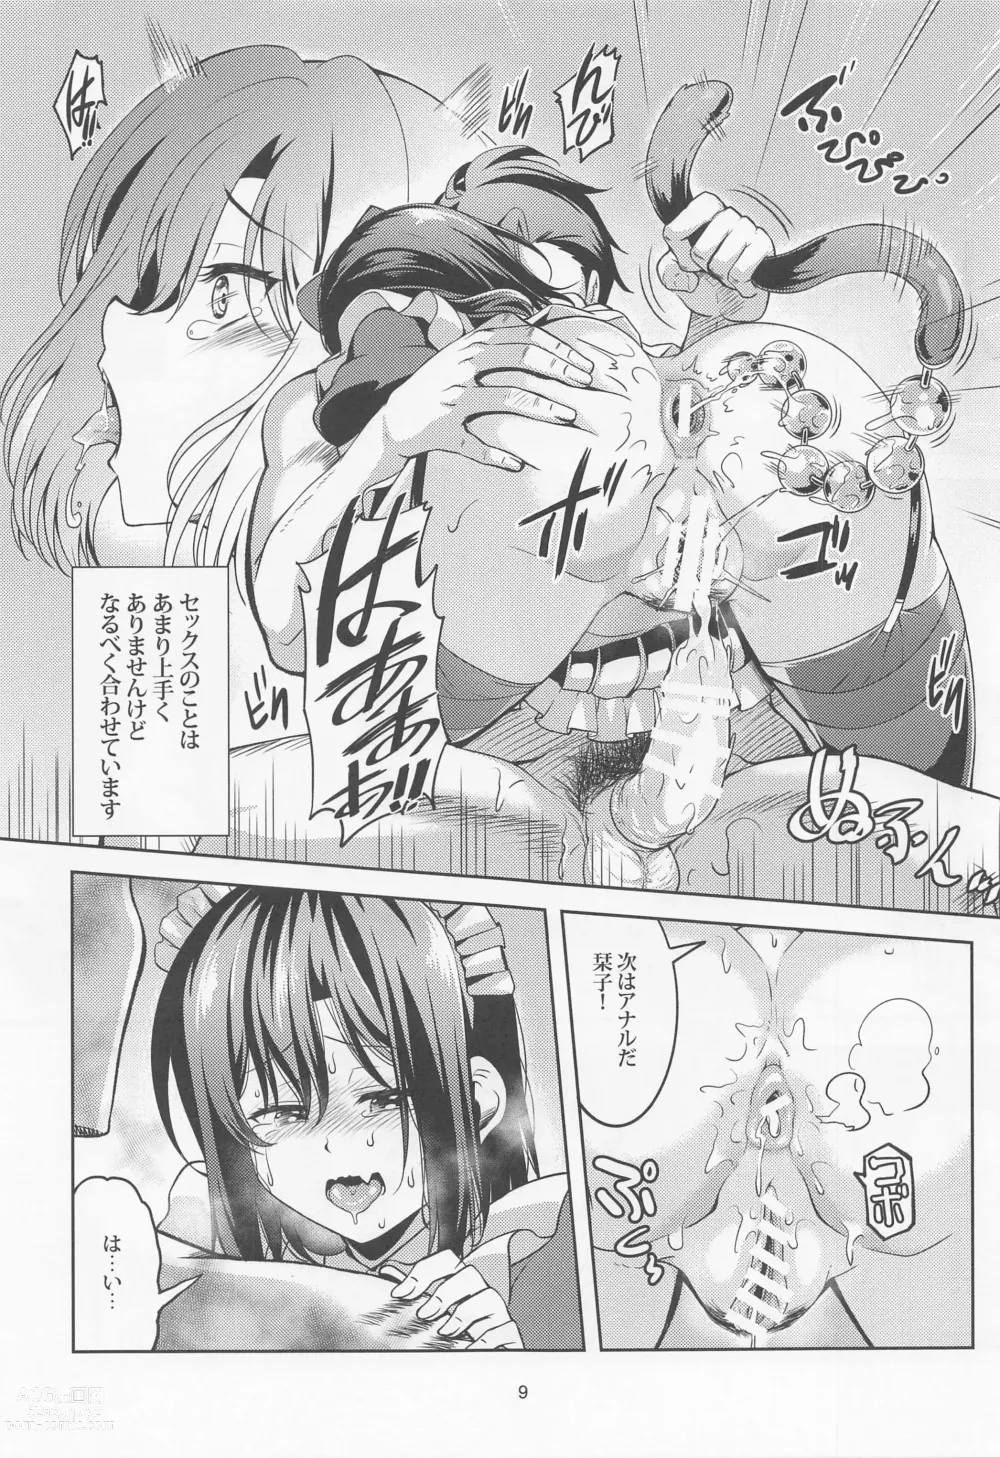 Page 10 of doujinshi Shioriko -Seikoui no Tekisei-